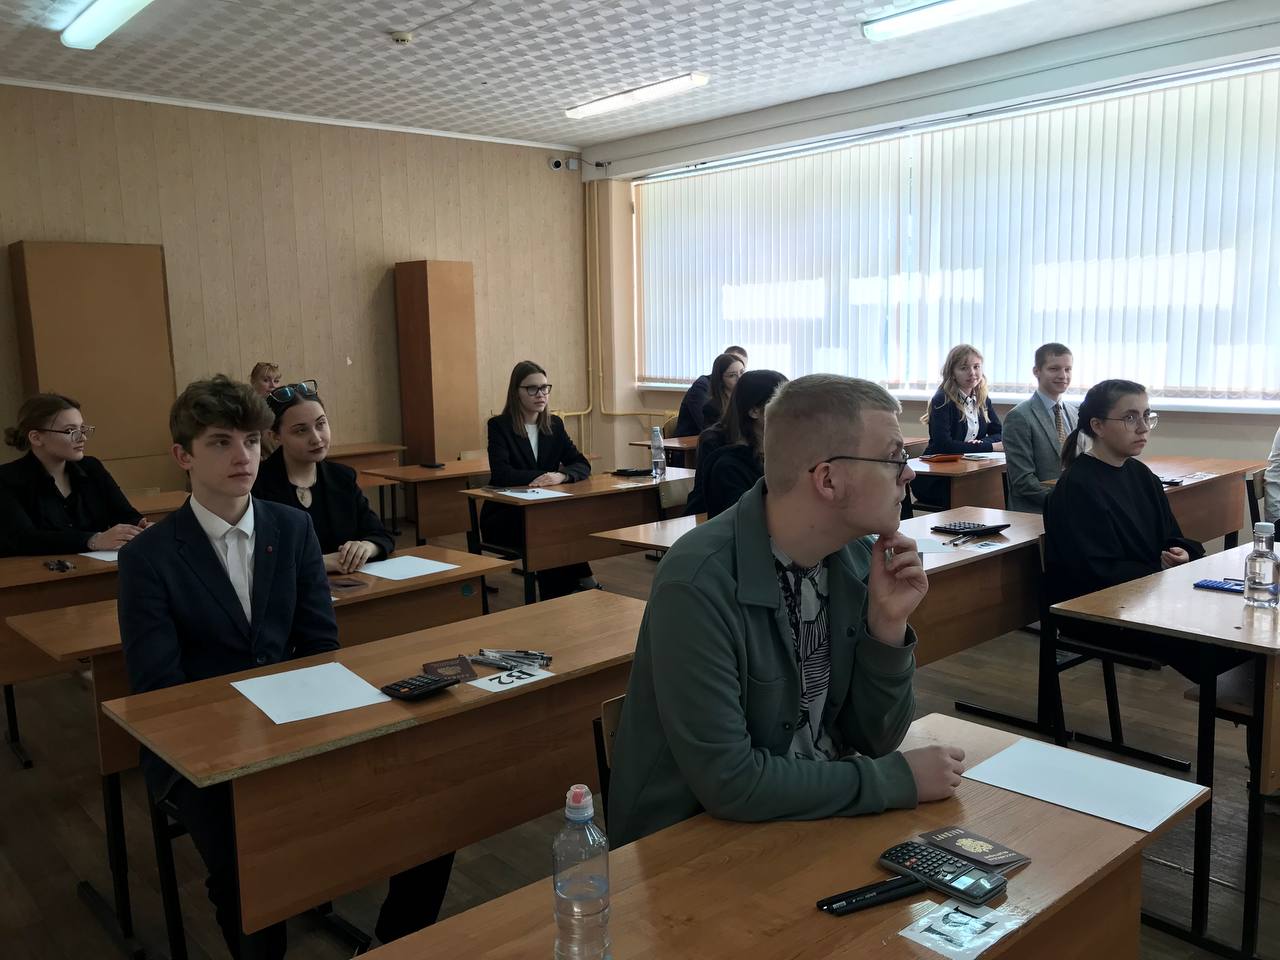 Ульяновские школьники смогут узнать результаты ЕГЭ на Госуслугах.